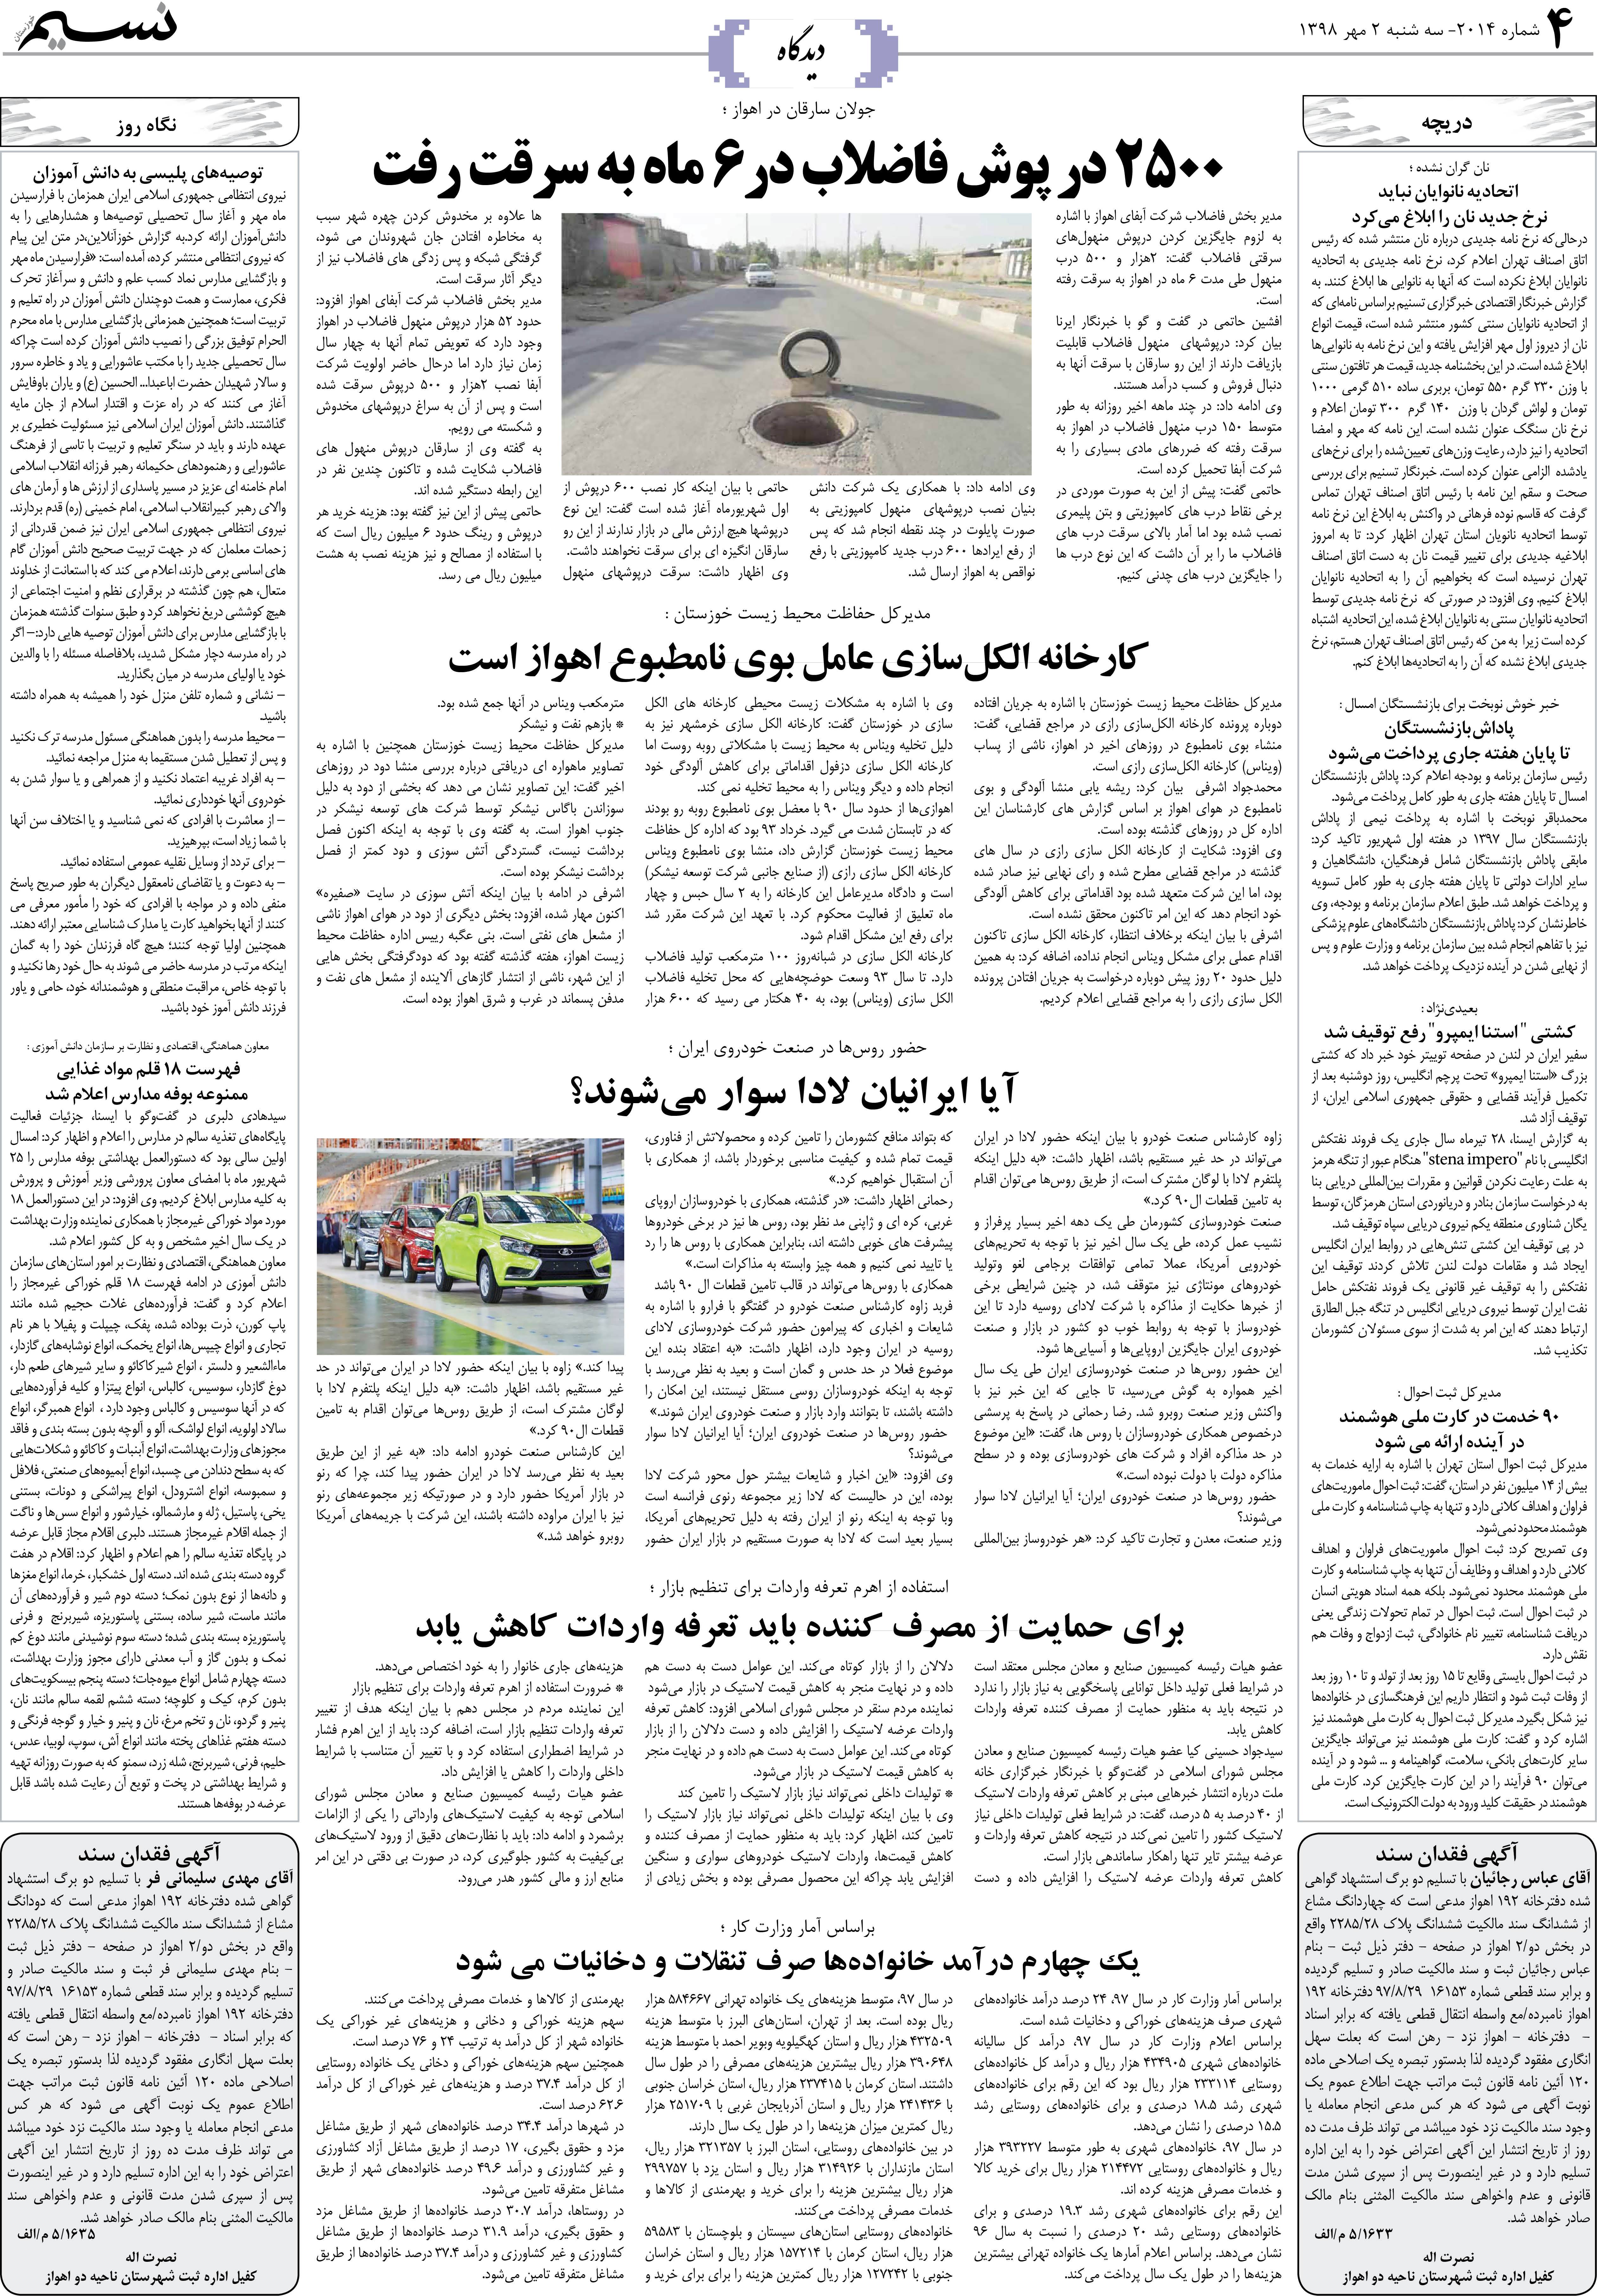 صفحه دیدگاه روزنامه نسیم شماره 2014